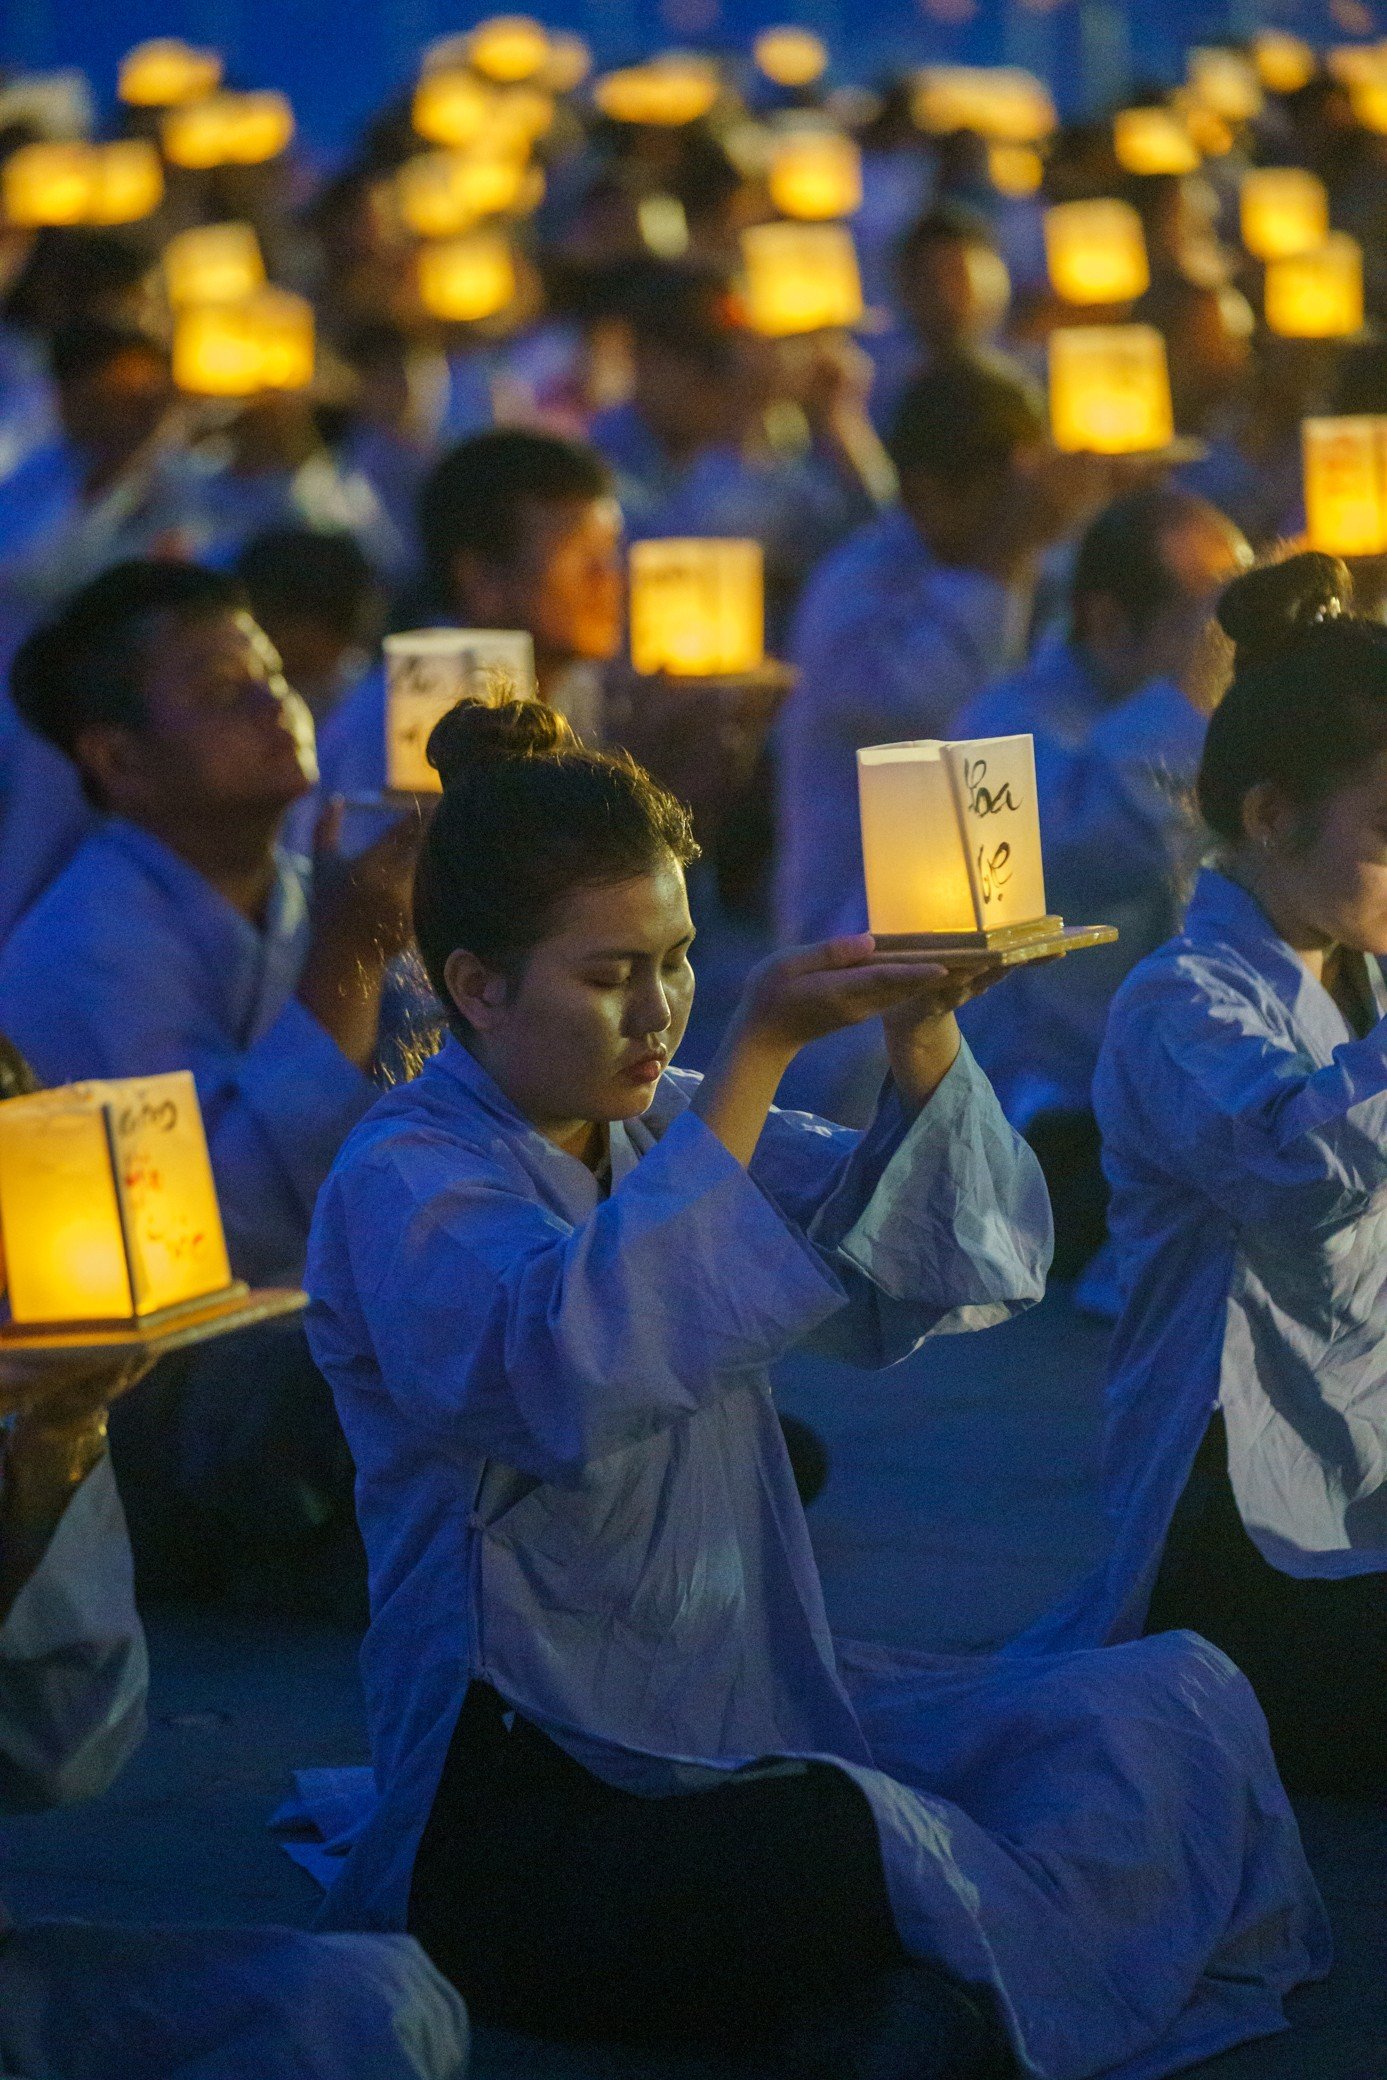 Mỗi ngọn đèn hoa đăng được thắp lên là một lời cầu nguyện, một tâm niệm thiện lành, an lạc cho mình và cho mọi người. Nghi thức dâng hoa đăng được tổ chức vào tối 27.8.